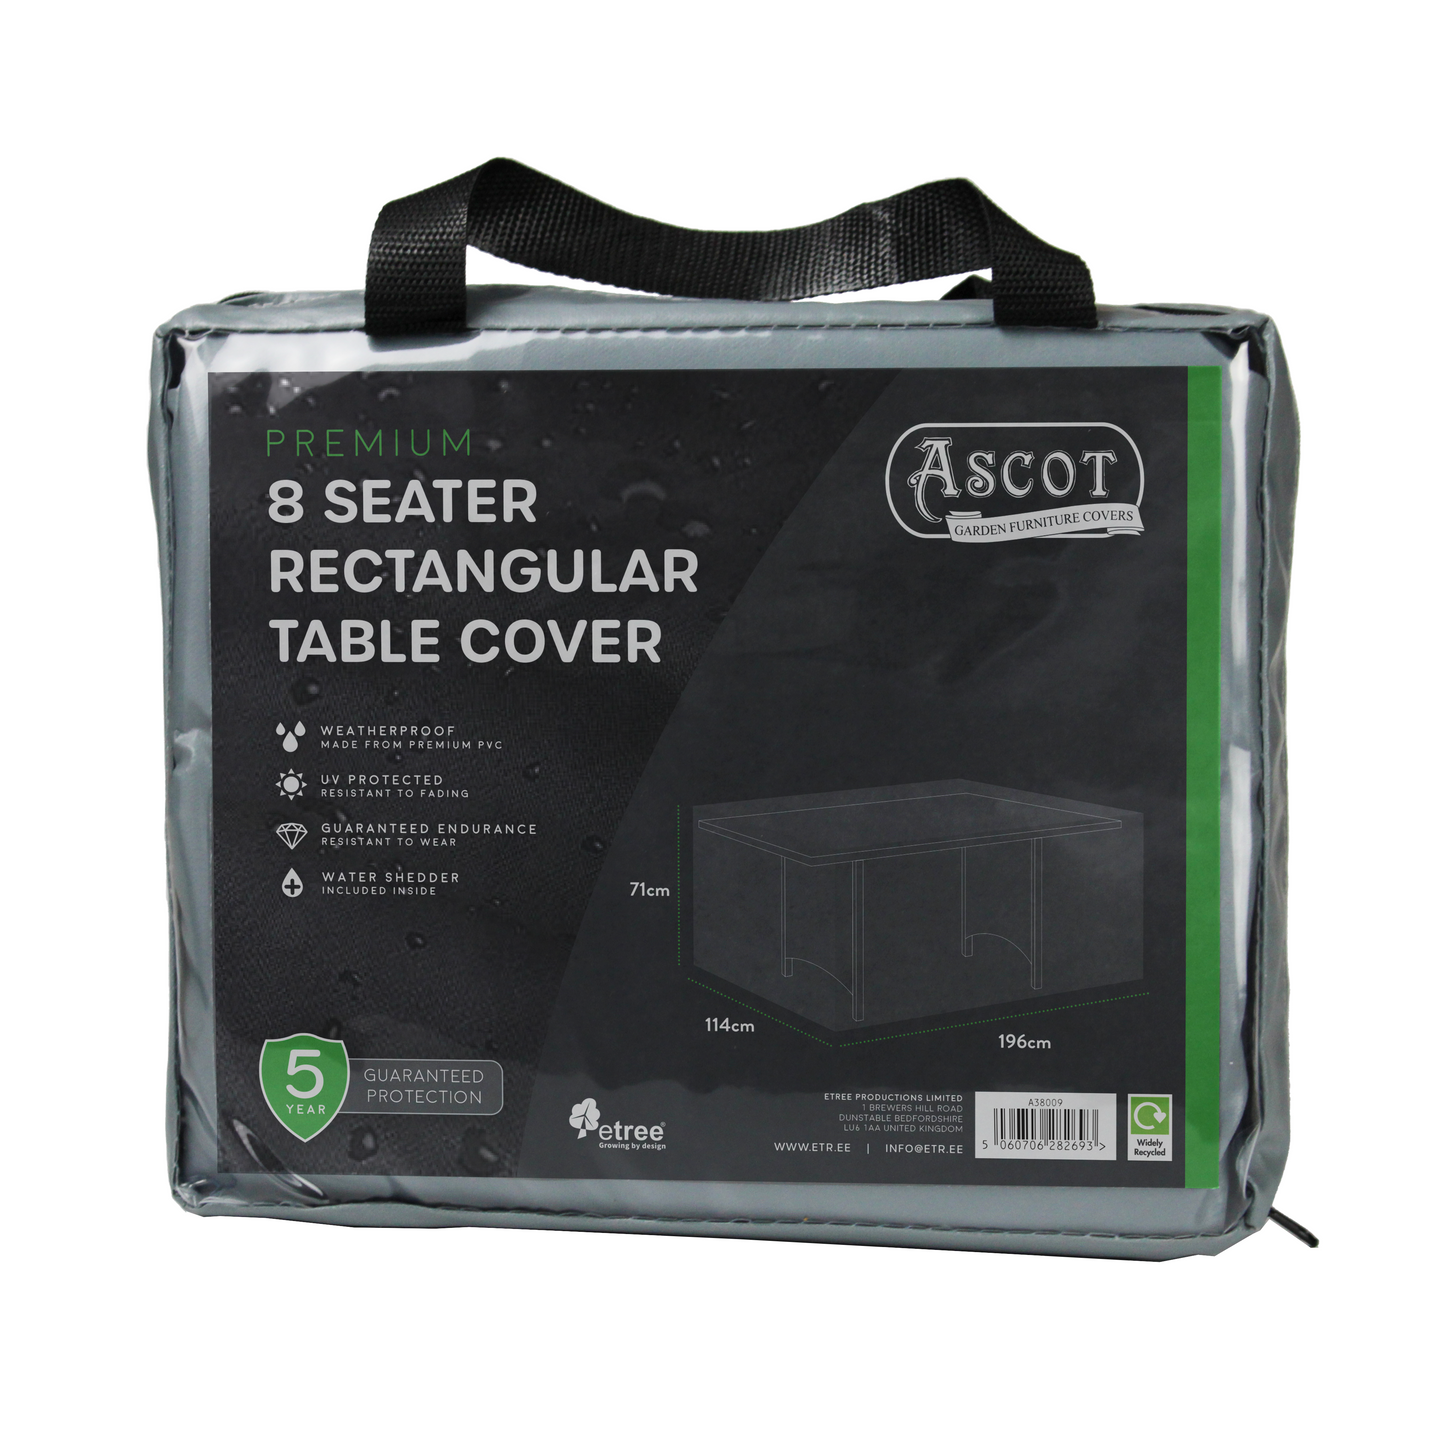 Premium Rectangular 8 seater table cover - 196 X 114 X 71 (H) cm